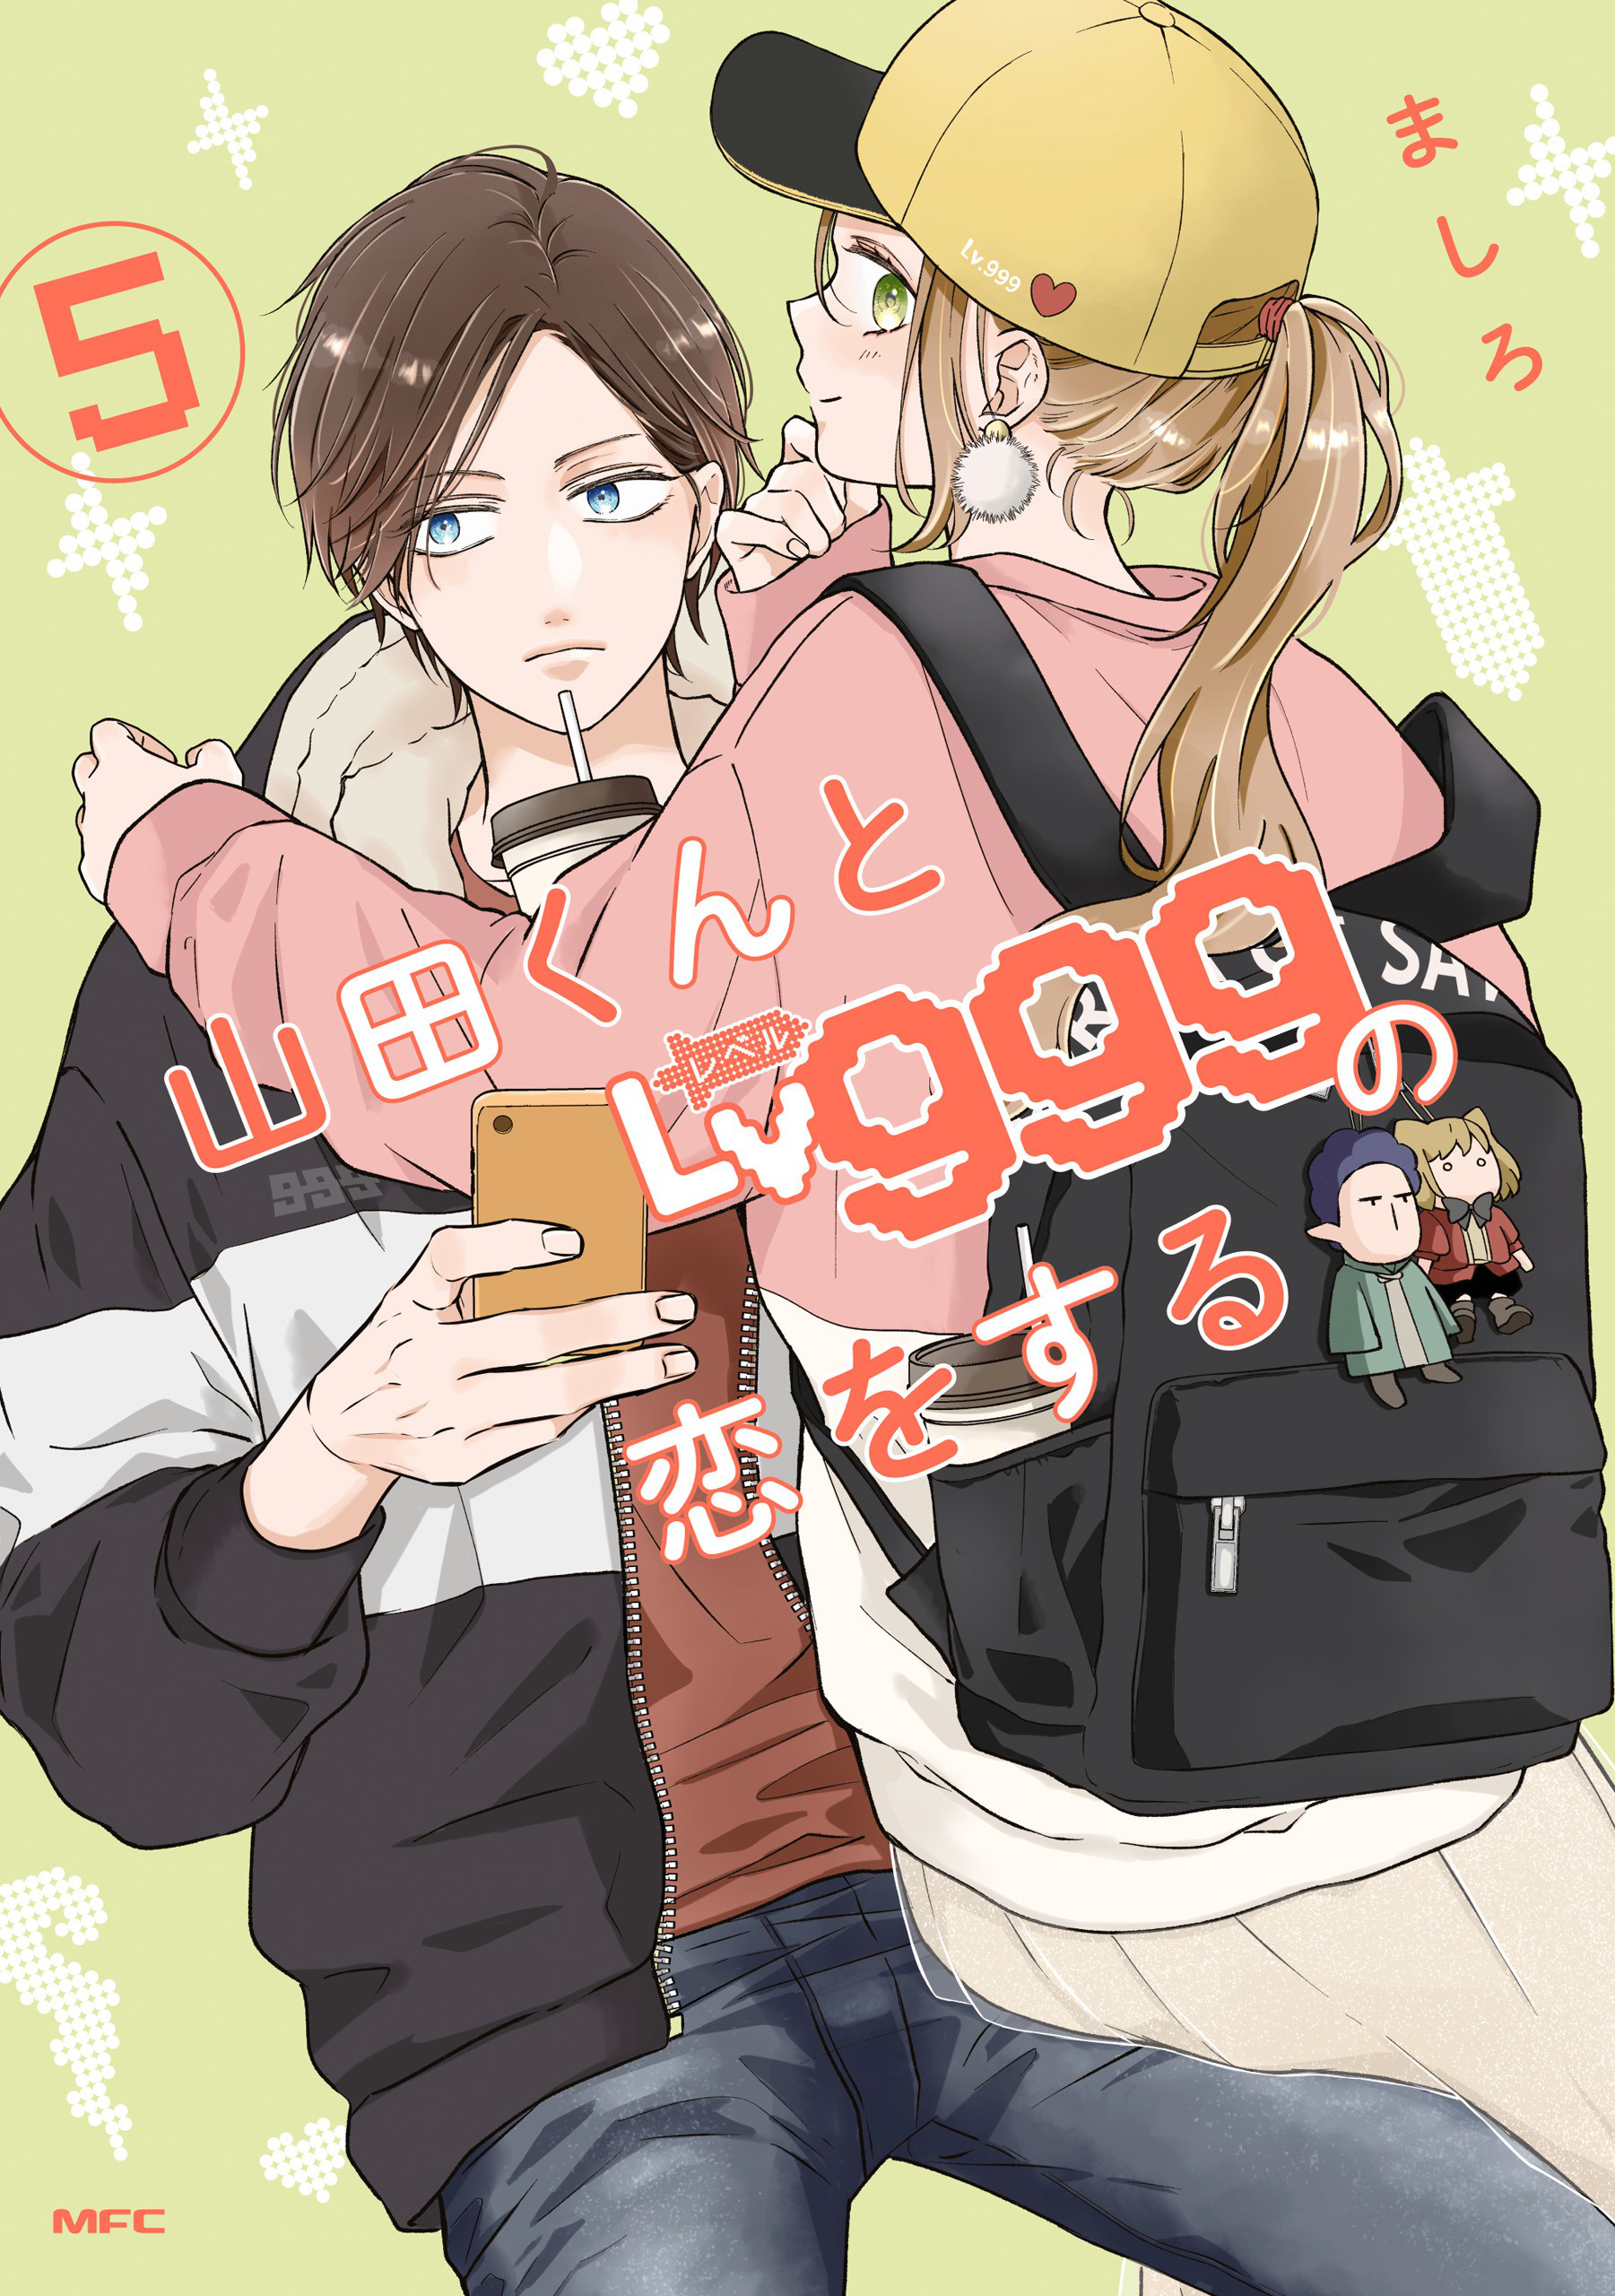 Volume 5. Loving Yamada at Lv999!